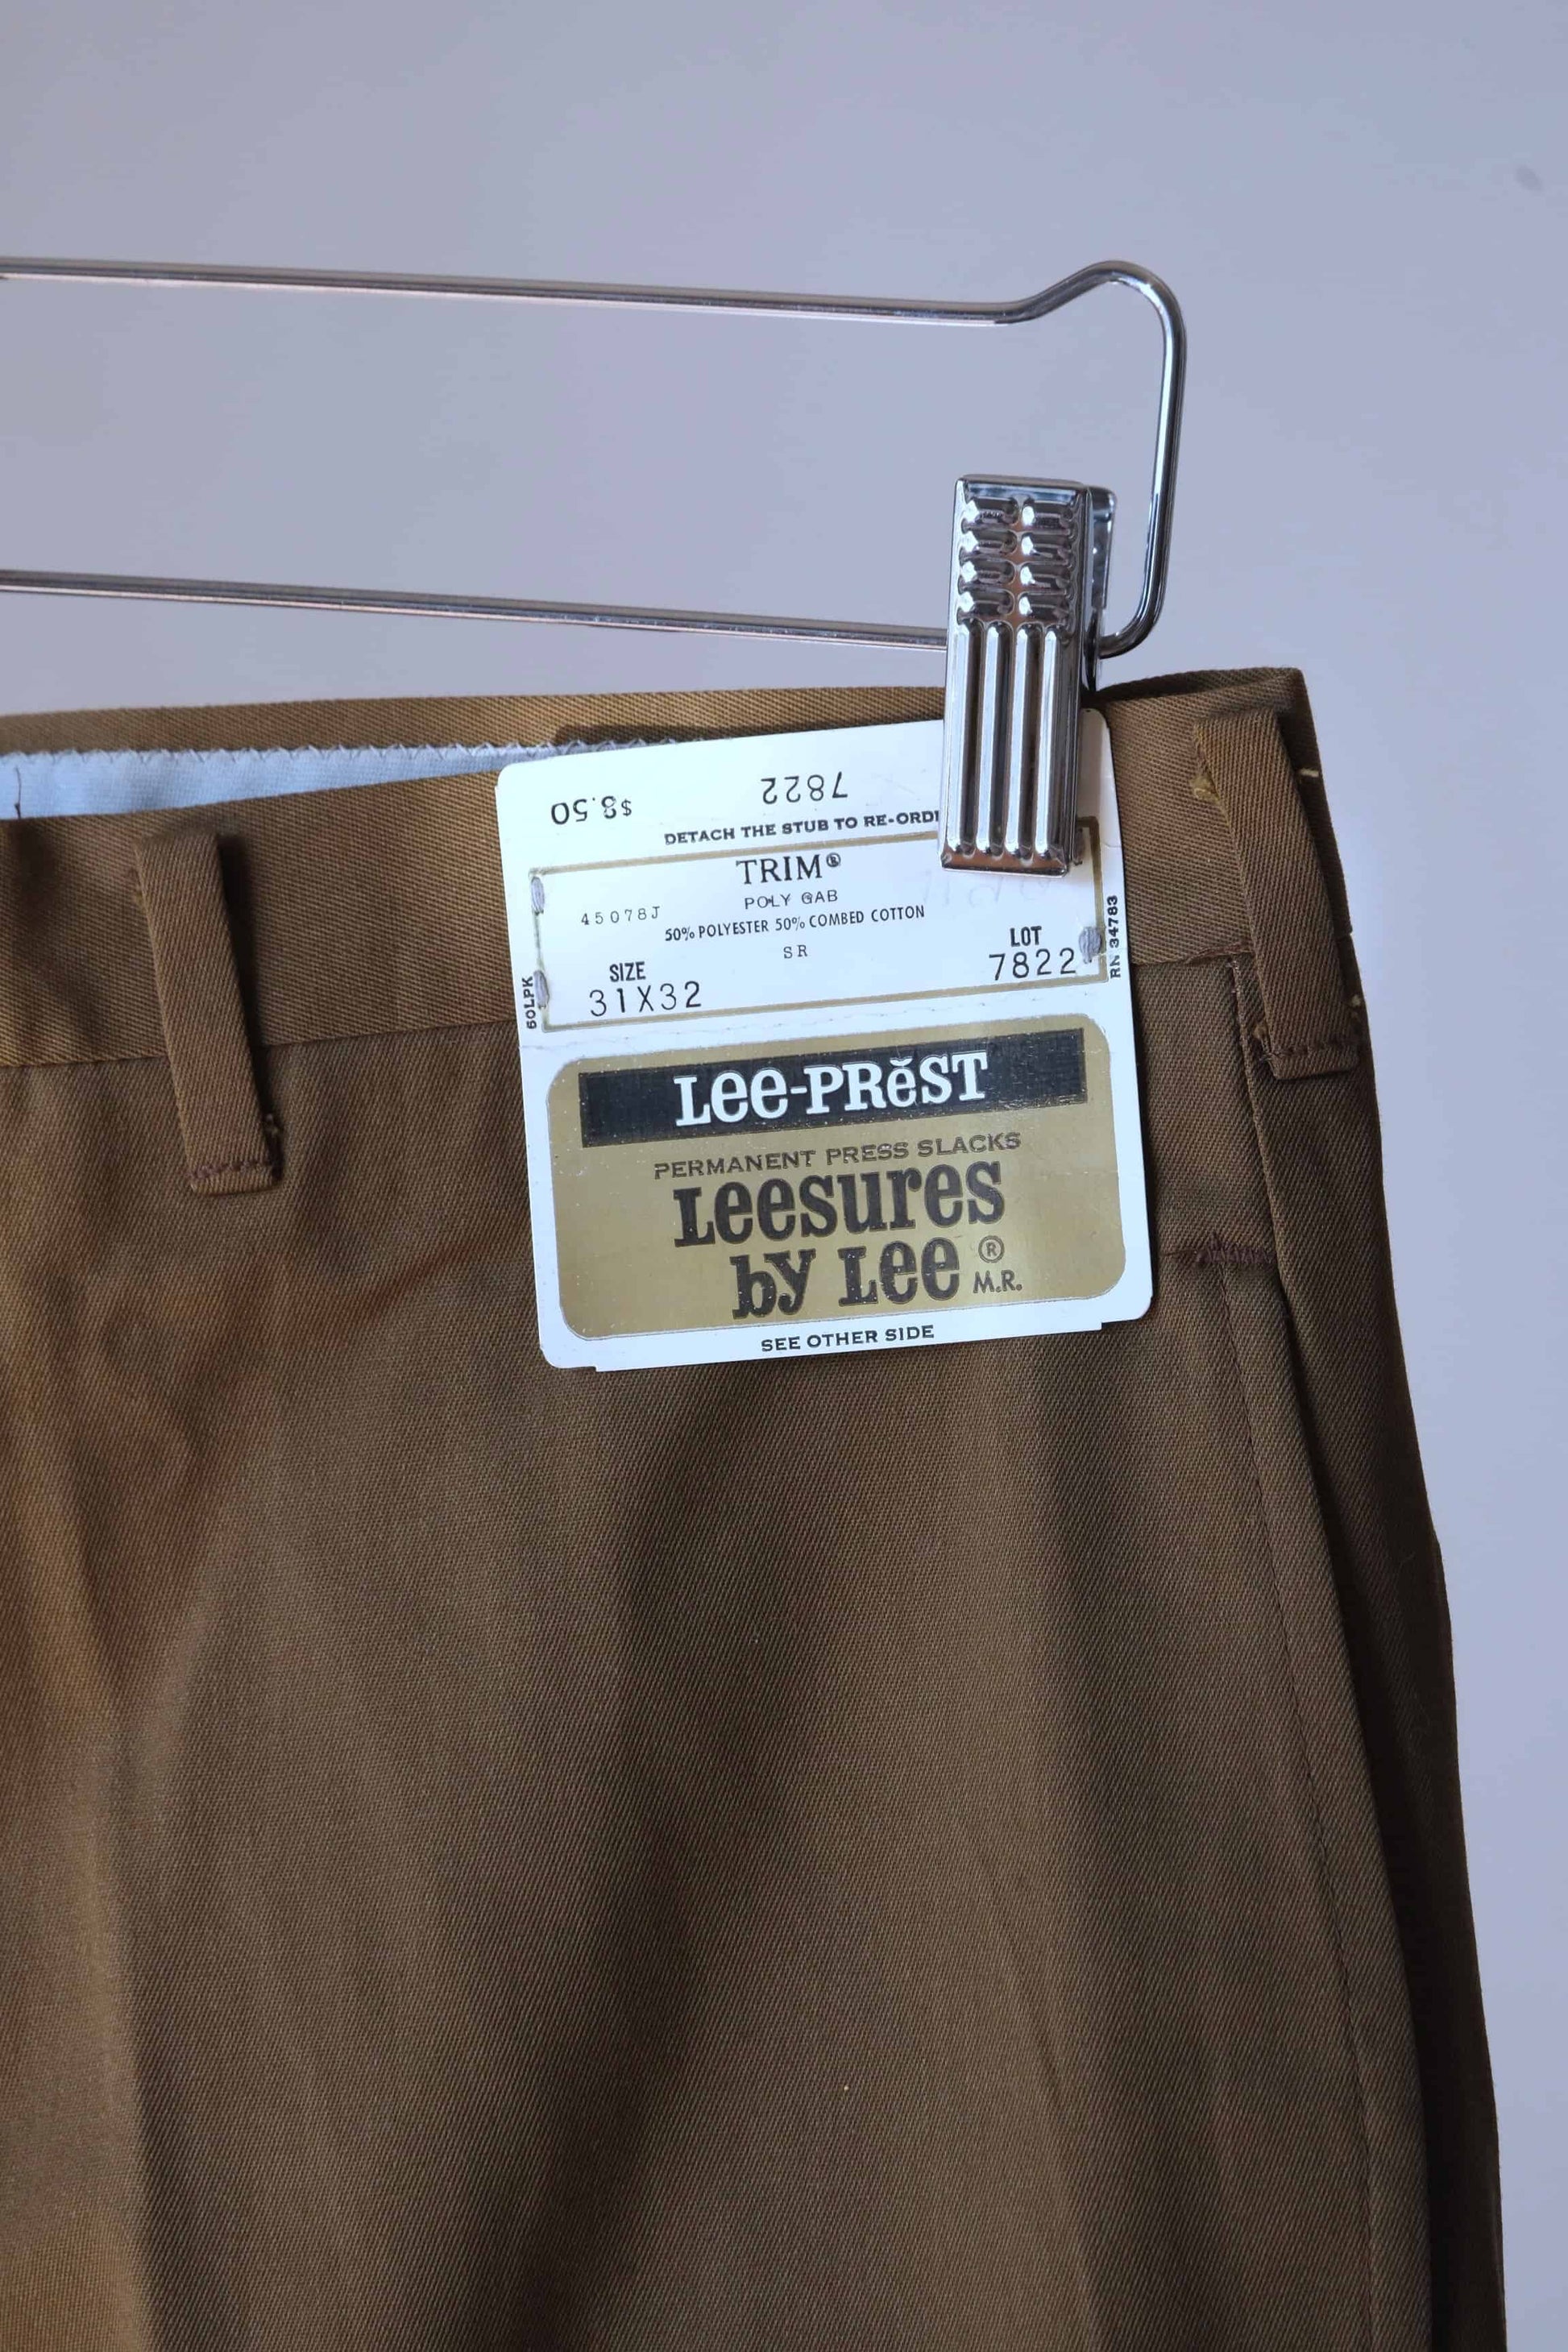 Vintage Lee Pants in brown showing label